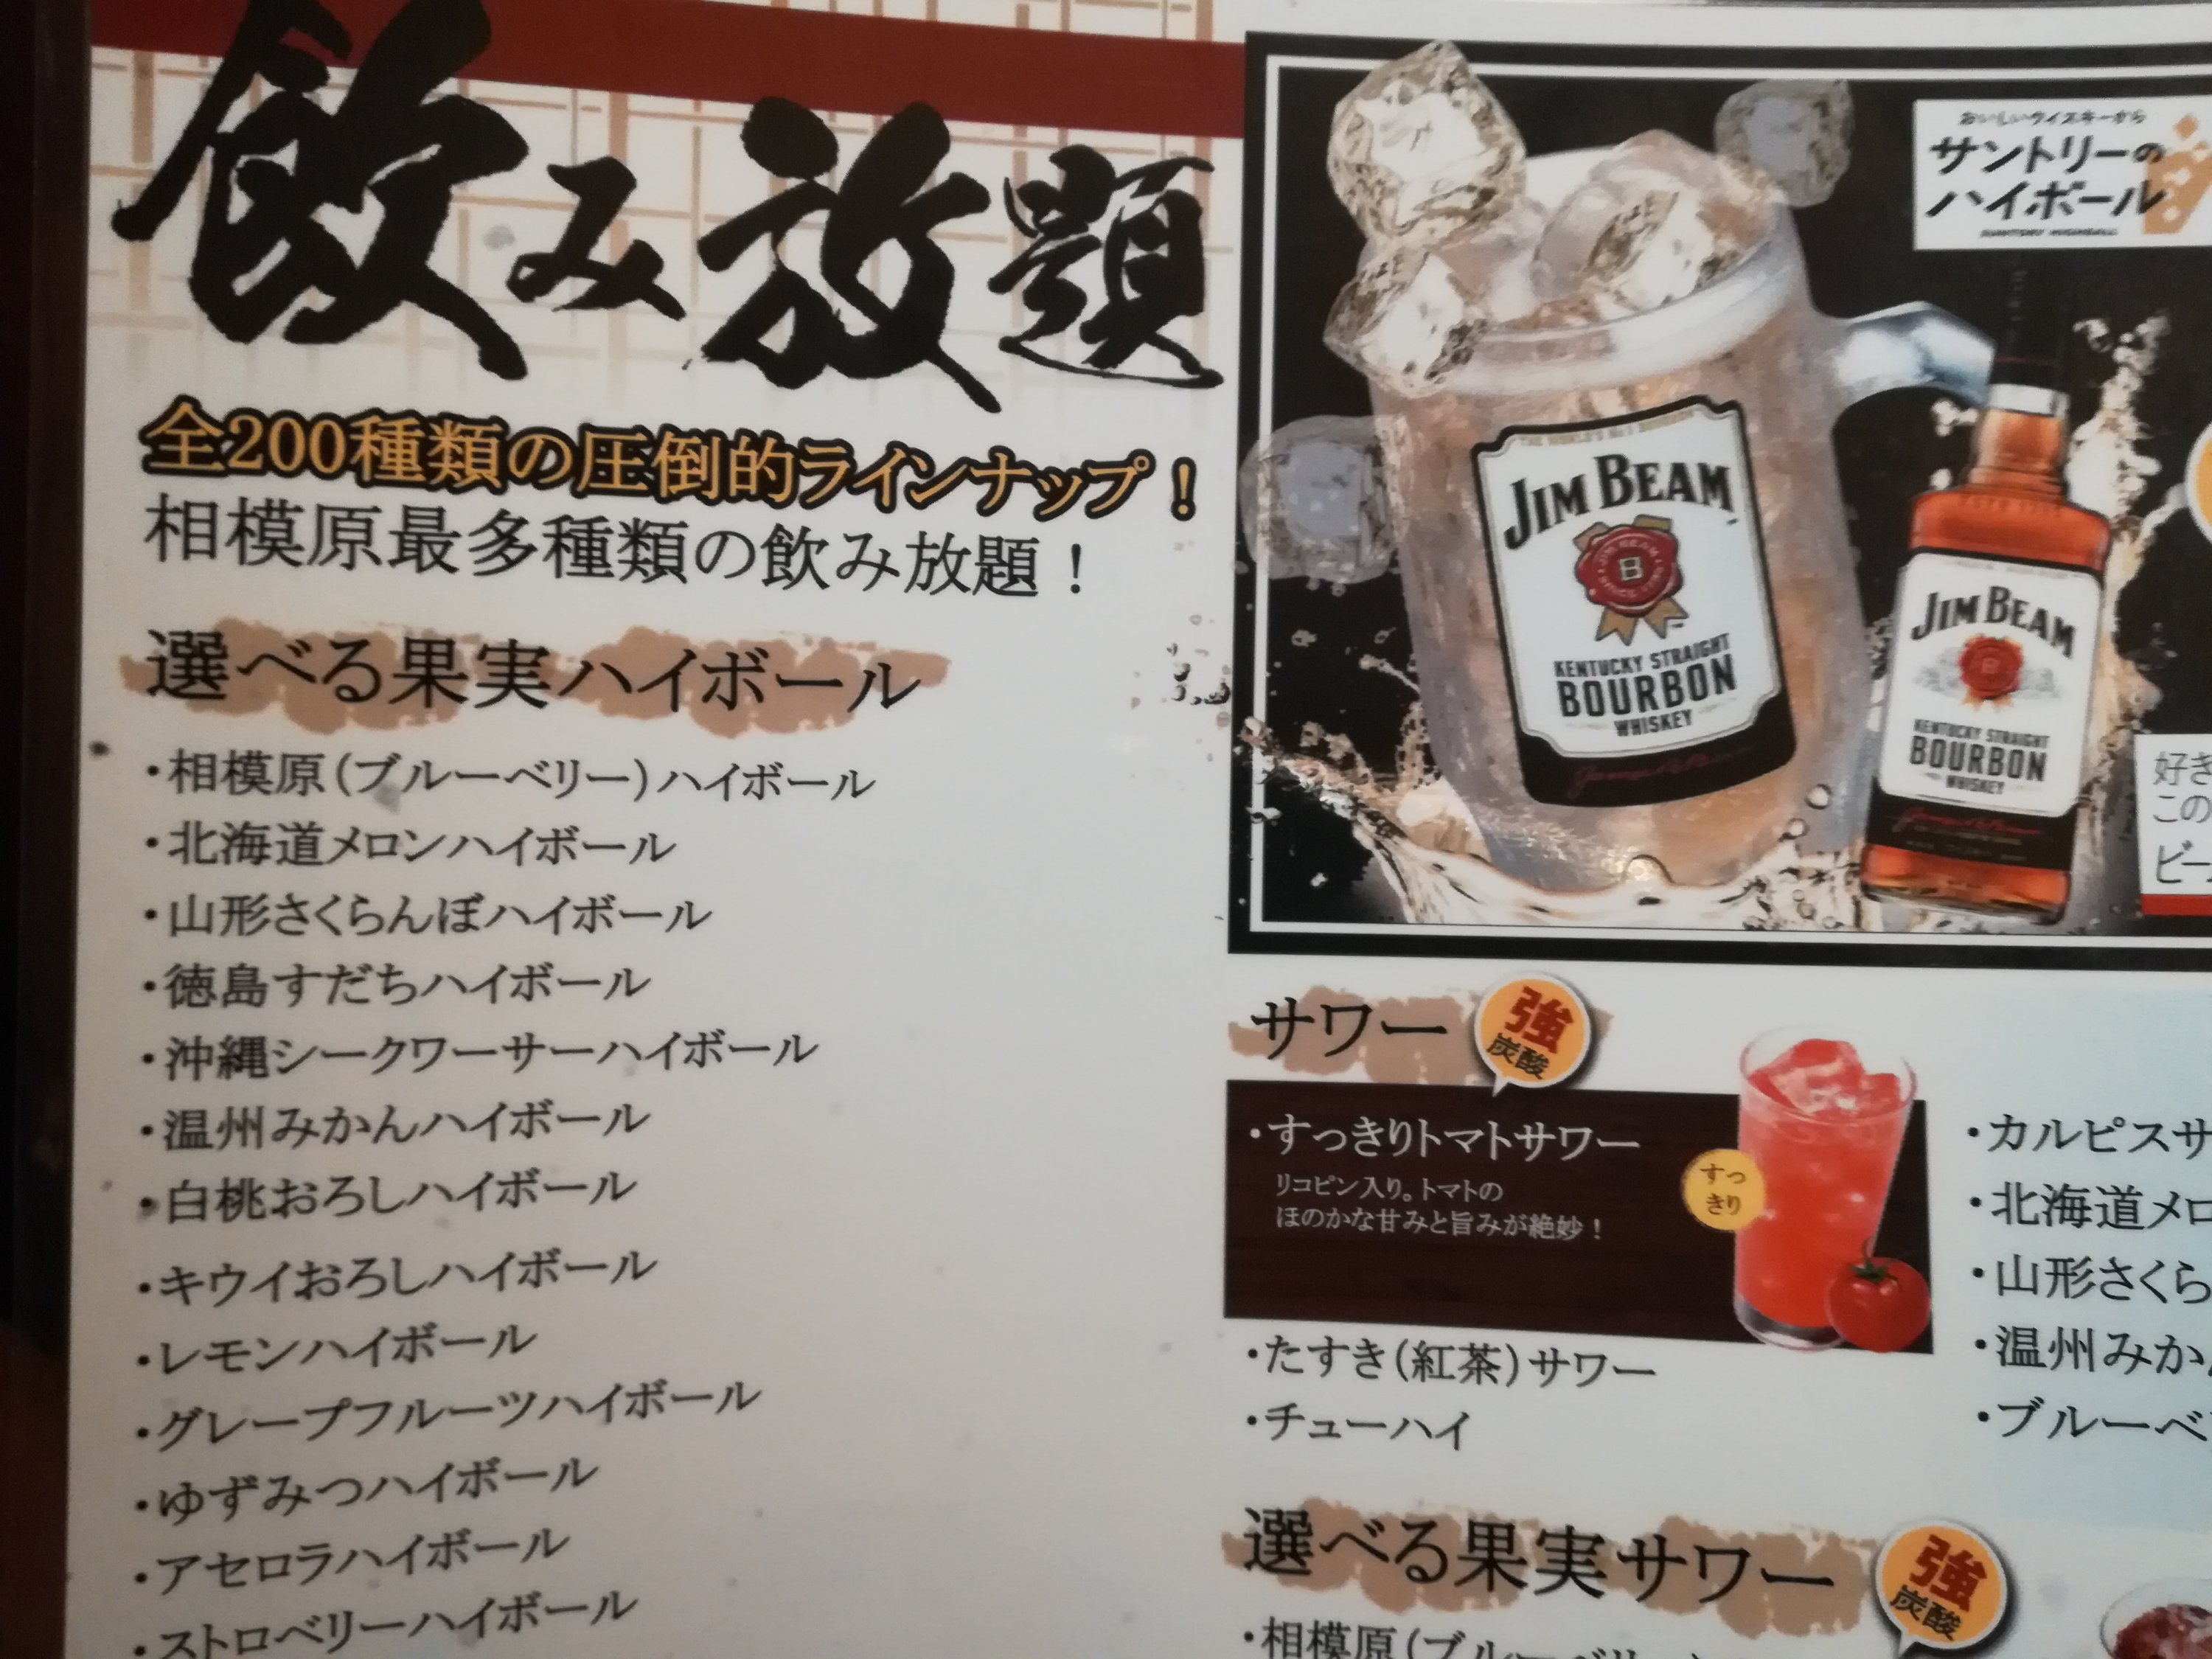 僕好みではないけど 横浜線相模原駅で個室居酒屋オシャレデートがしたいなら たすき で飲み放題はオススメです 普通のおじさんが書いているブログ